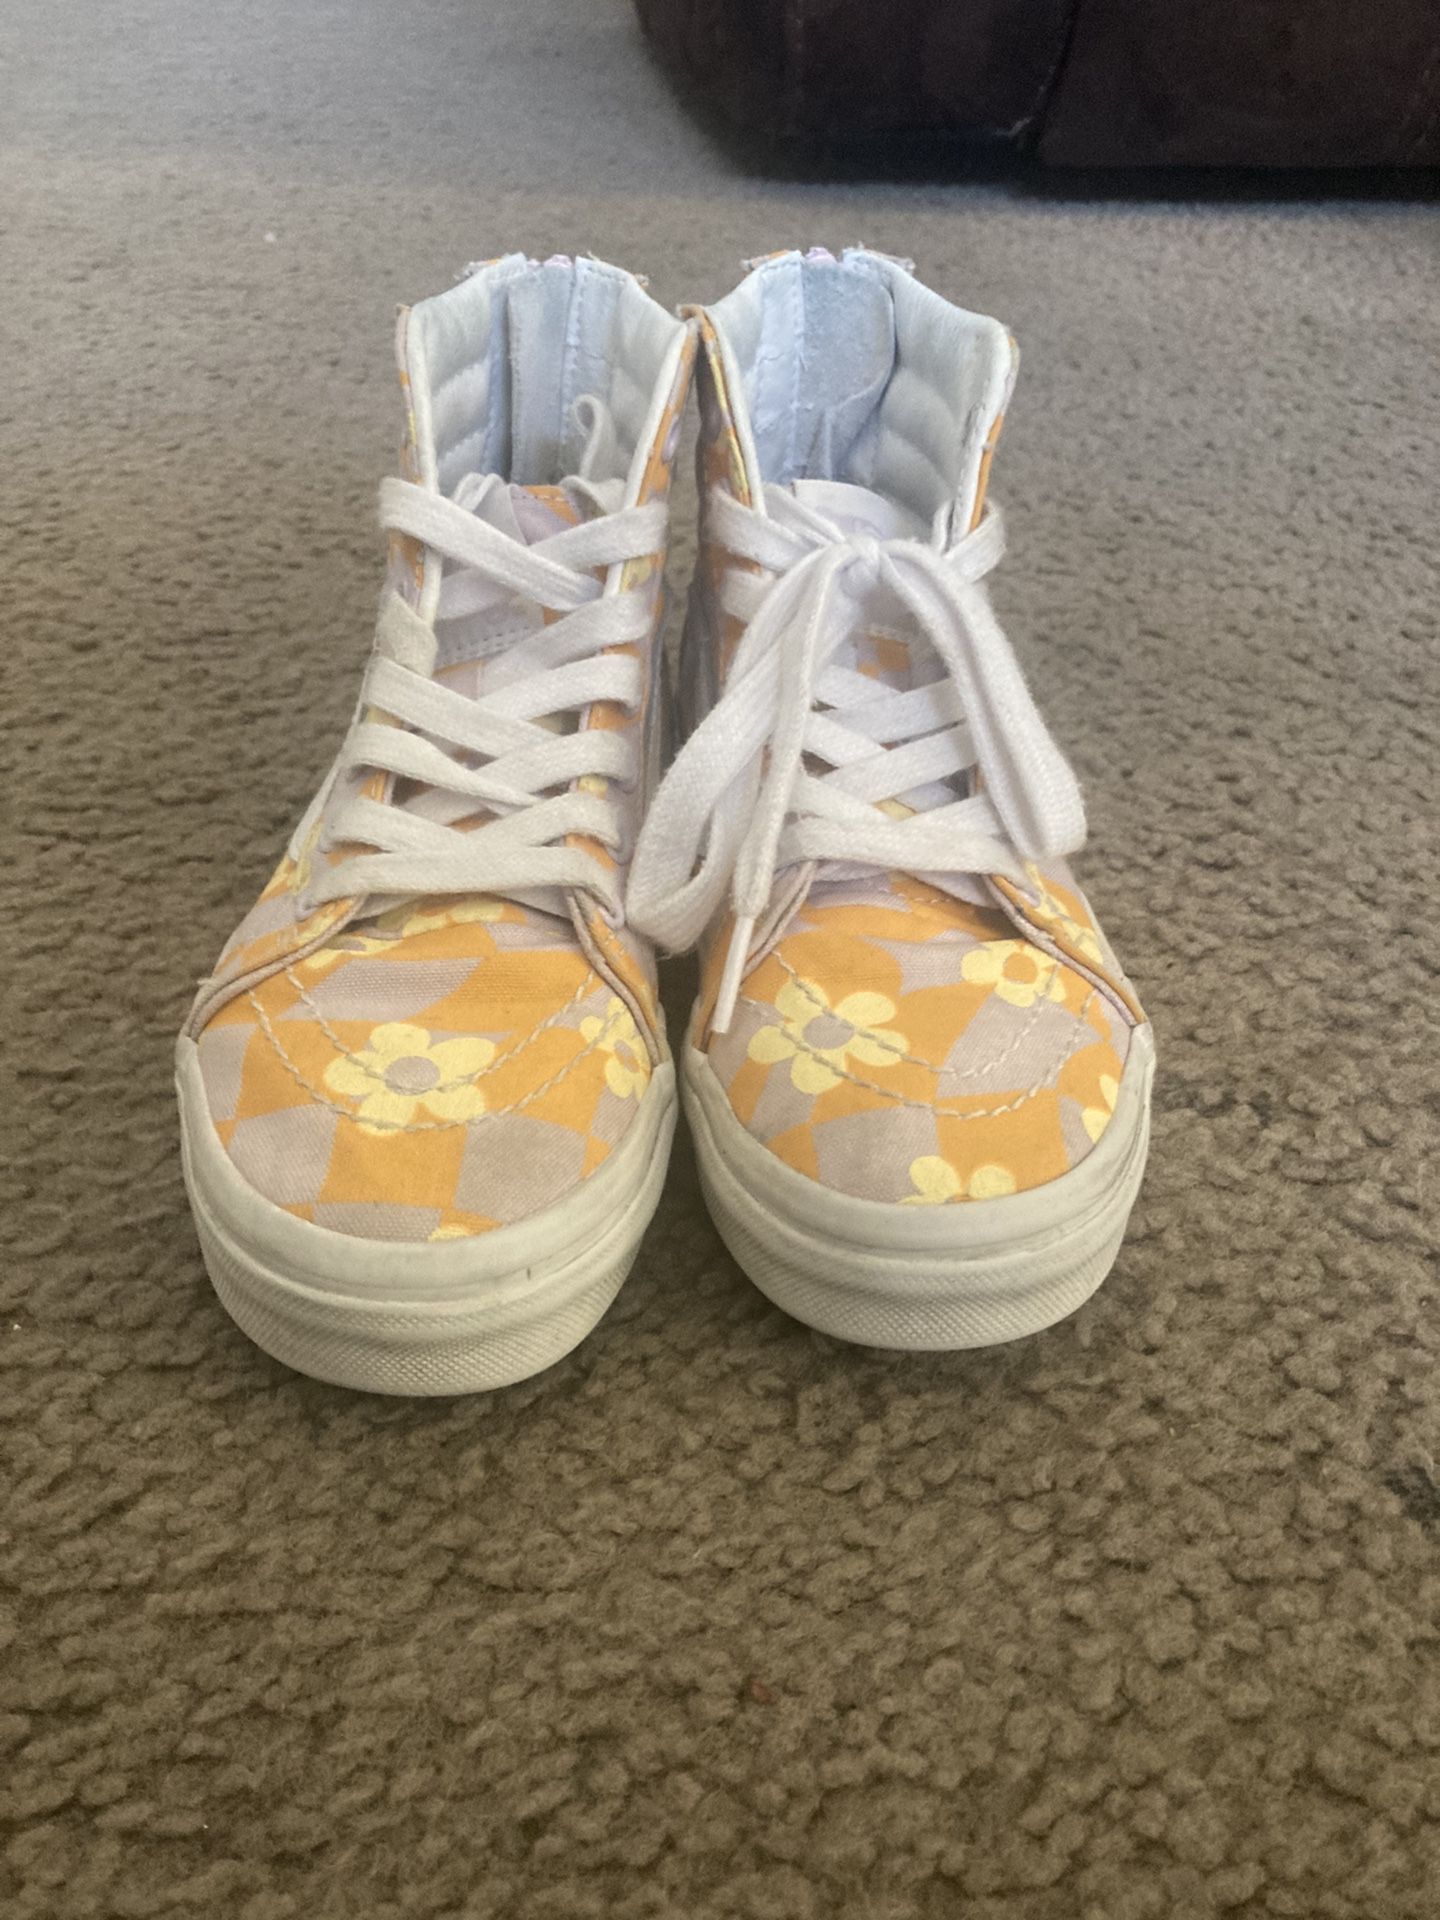 Flower Van Shoes